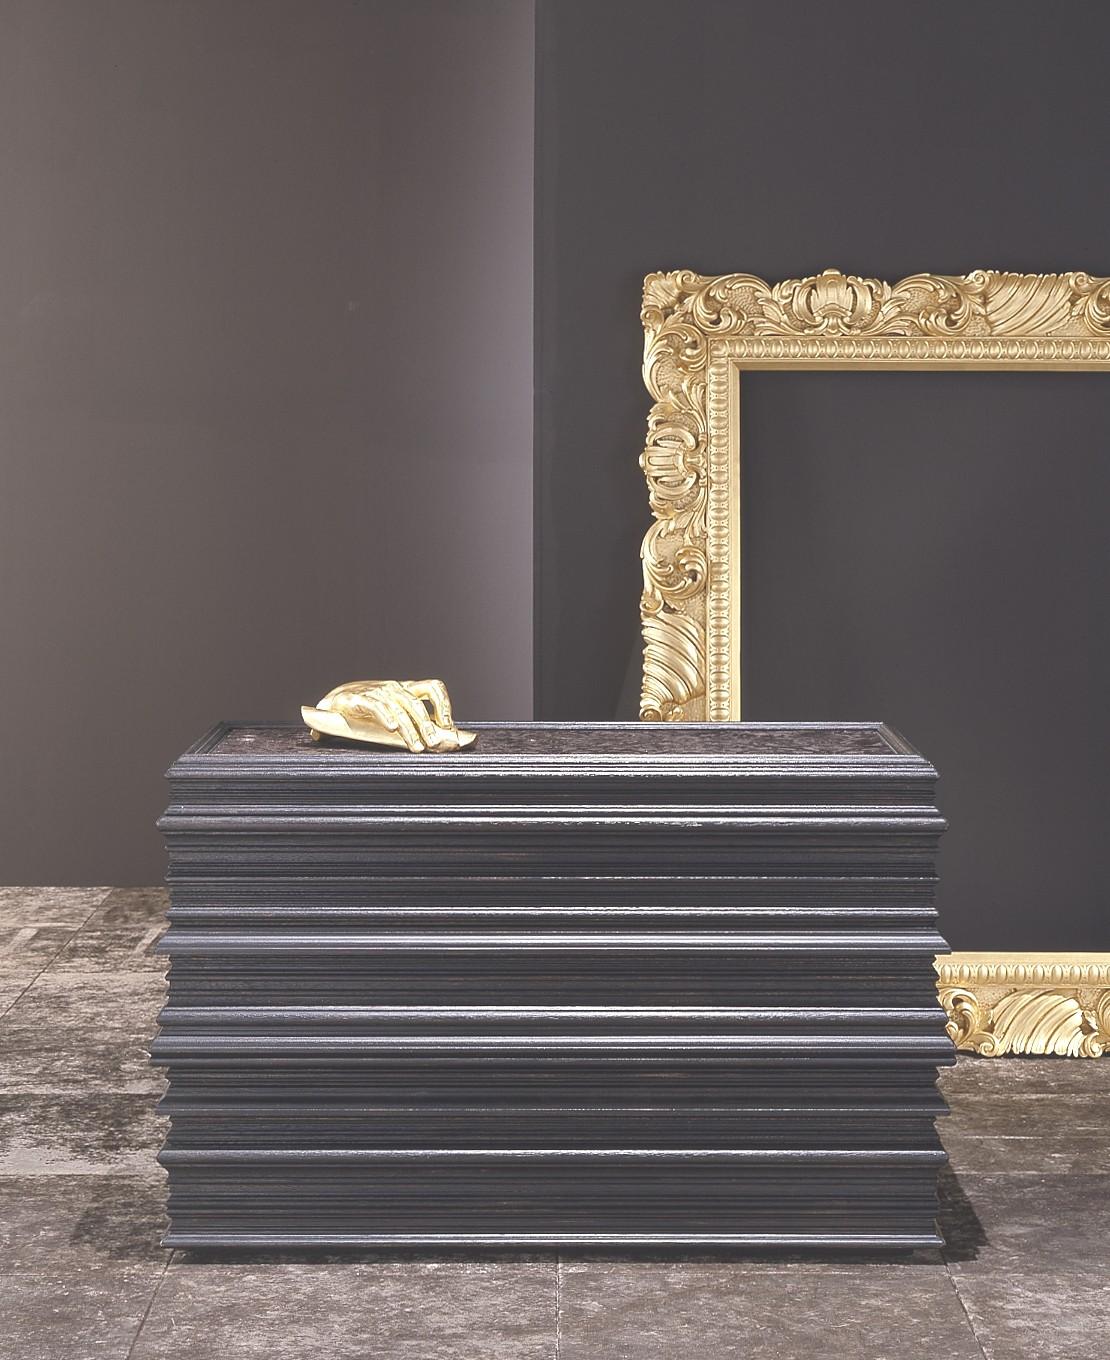 
Wir präsentieren den Inbegriff von Opulenz - unseren handgeschnitzten Barockrahmen mit Spiegel, der in sorgfältiger Handarbeit gefertigt wurde, um Ihrem Raum einen Hauch von königlicher Eleganz zu verleihen. Mit seinem luxuriösen Goldfinish ist